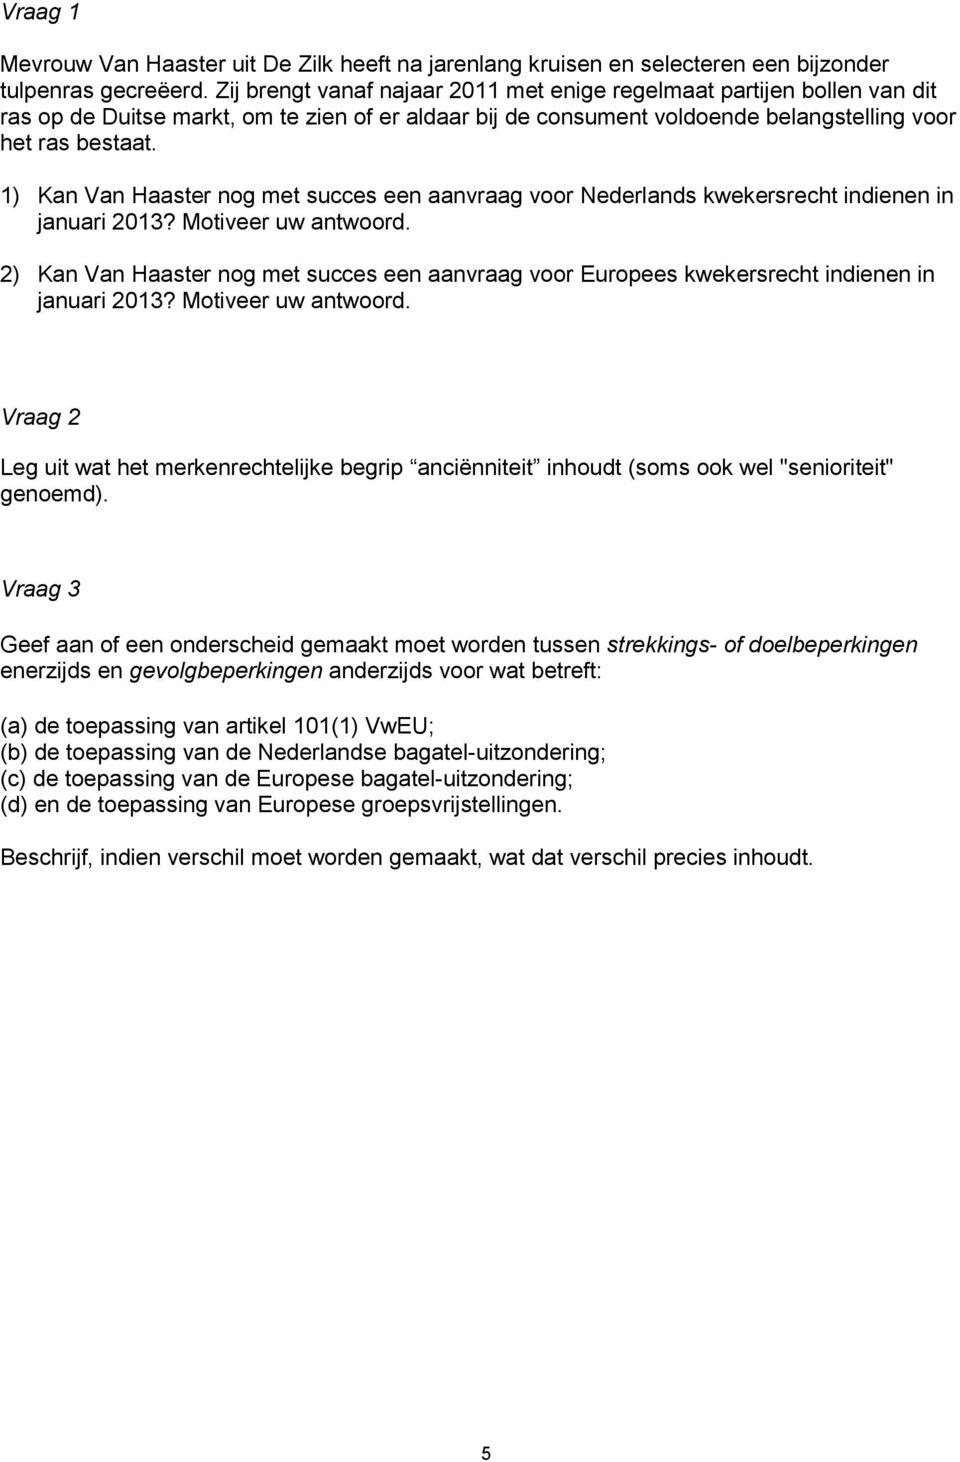 1) Kan Van Haaster nog met succes een aanvraag voor Nederlands kwekersrecht indienen in januari 2013? Motiveer uw antwoord.